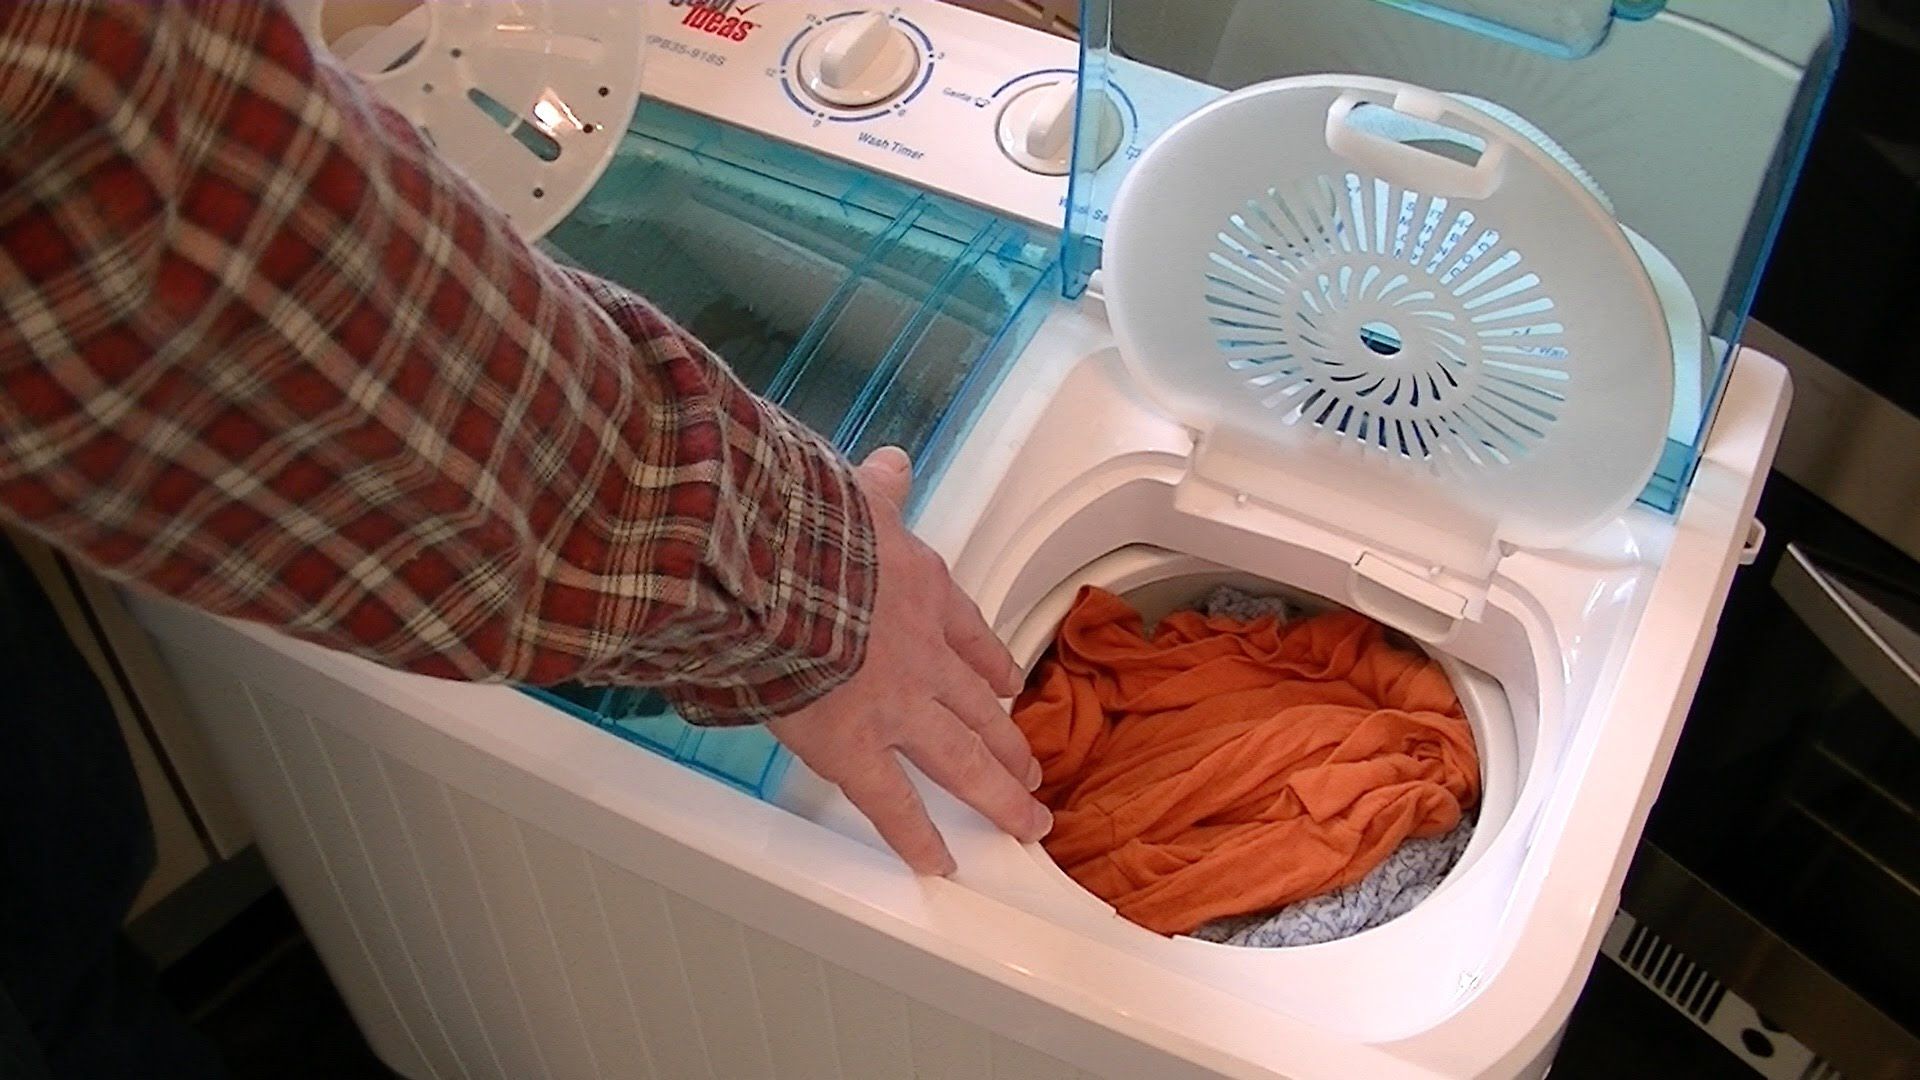 merawat mesin cuci